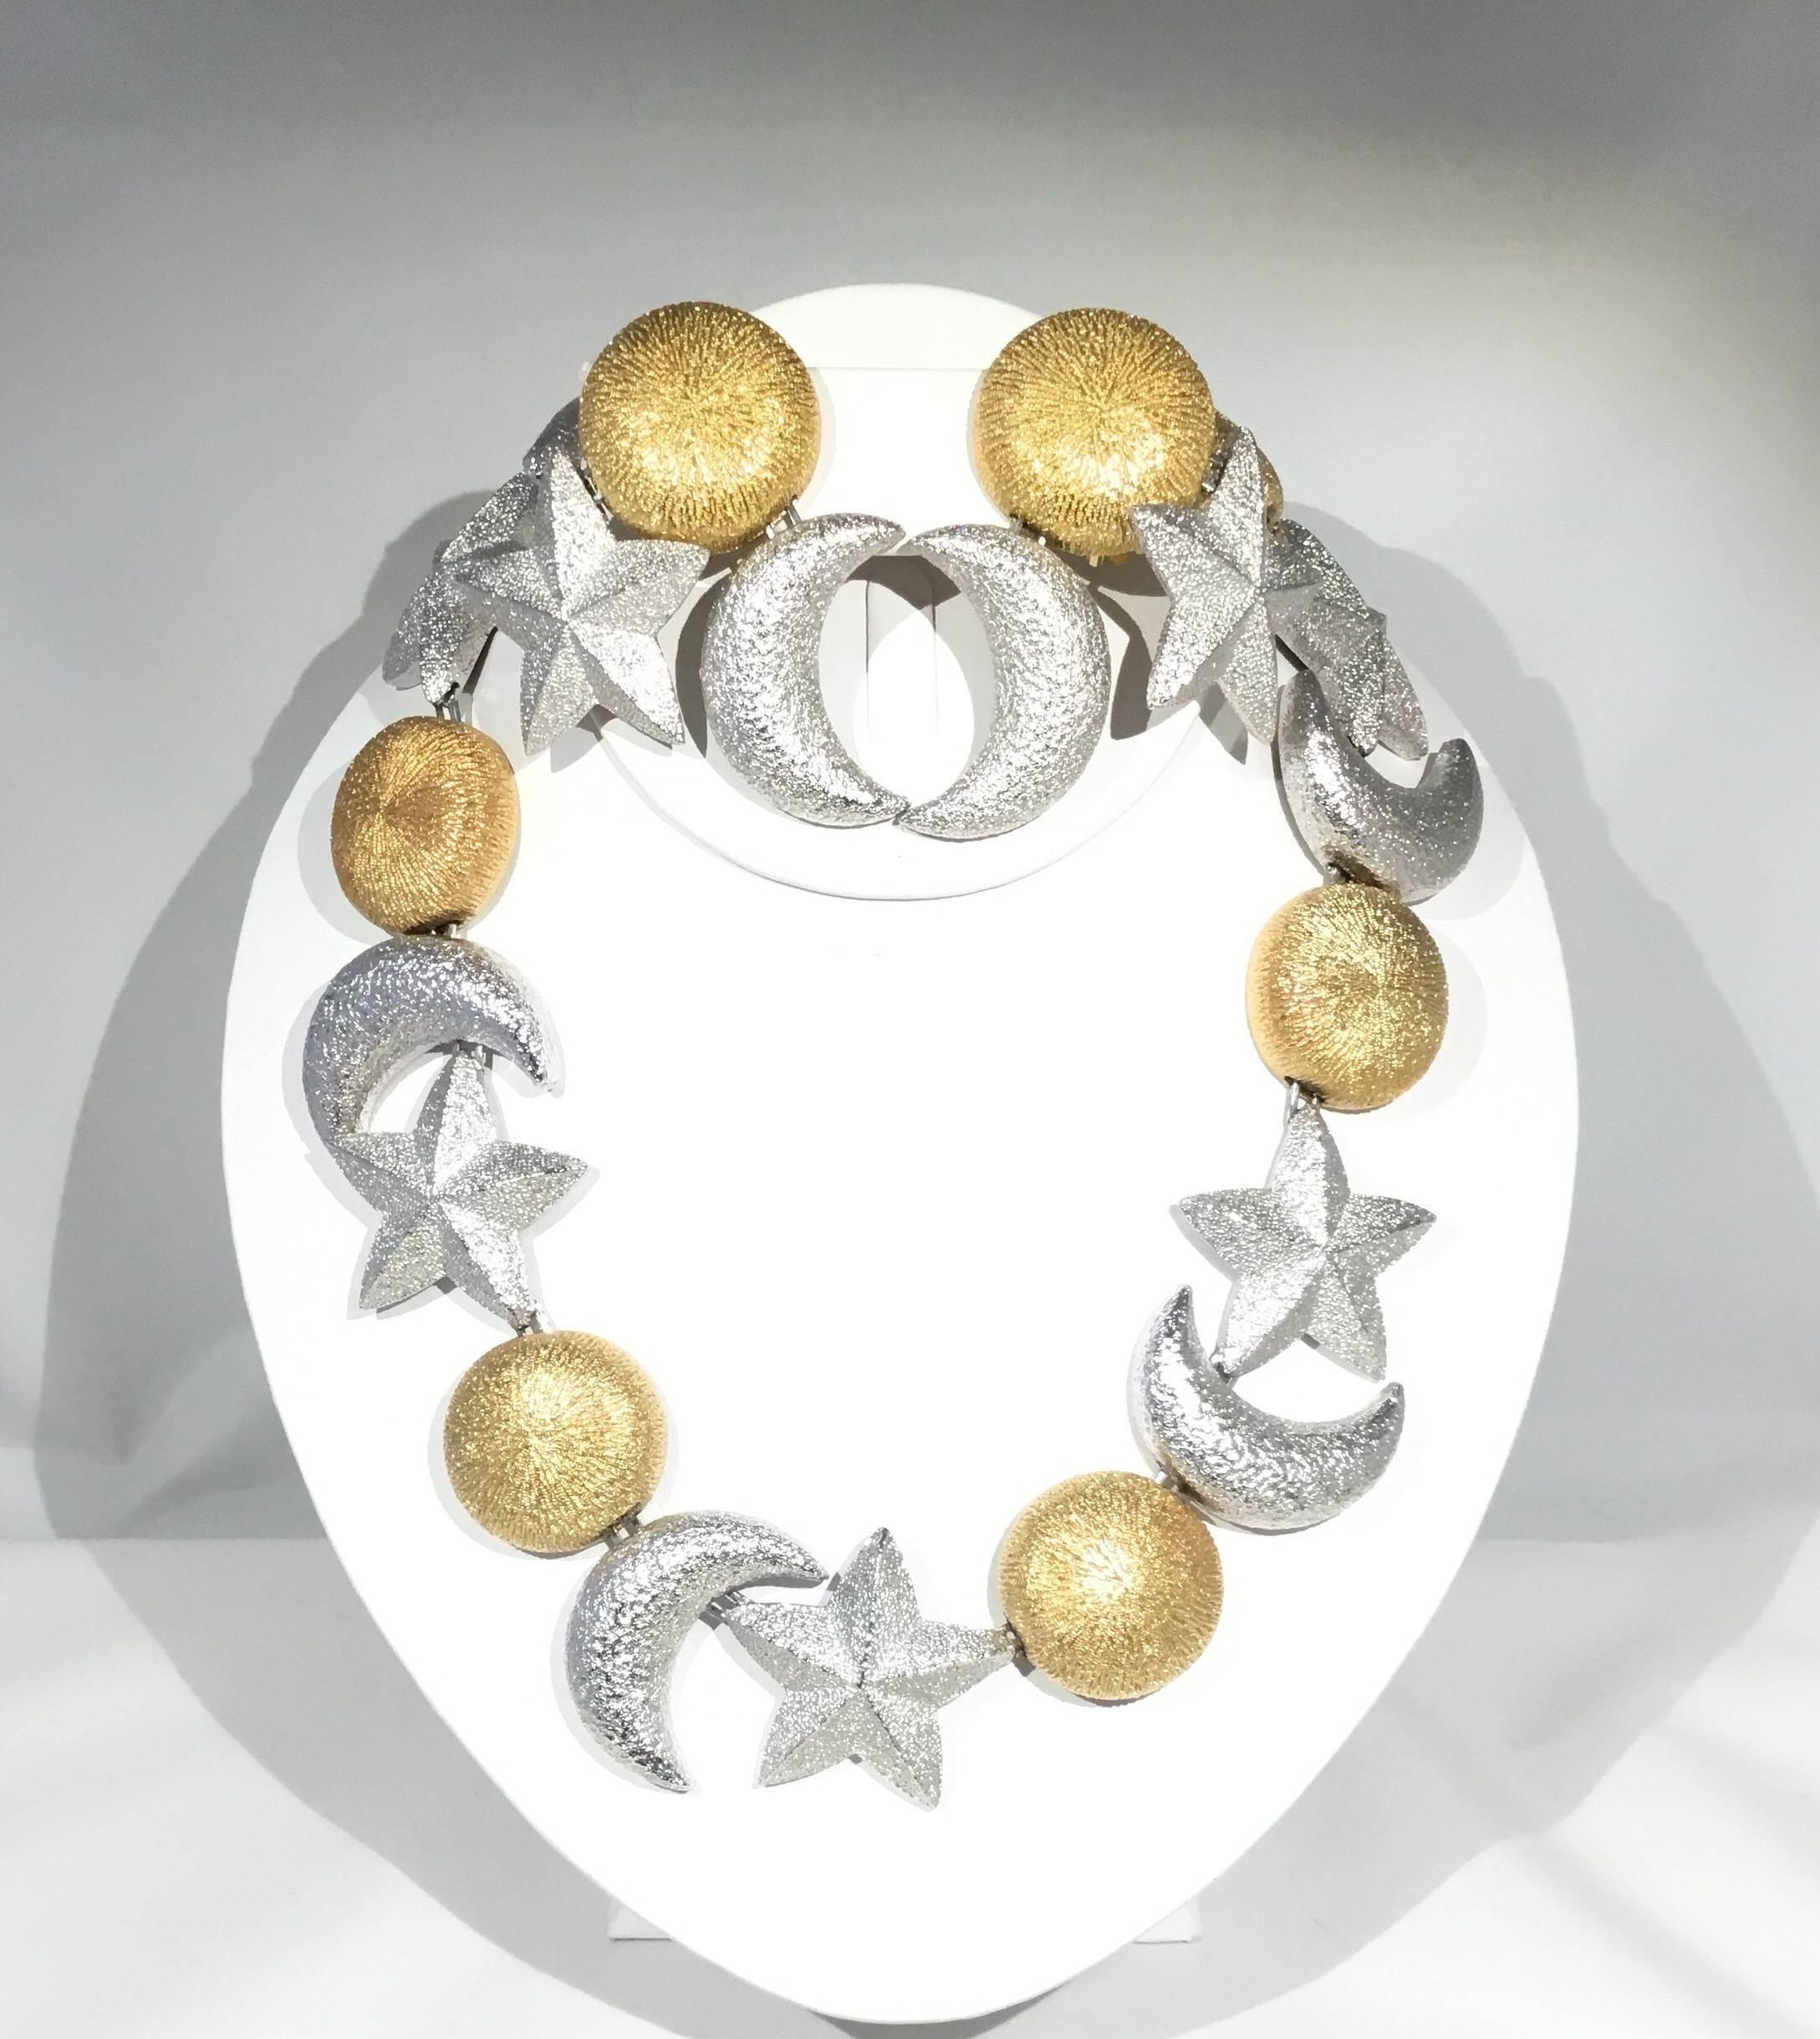 Große Christian Dior Clip auf Halskette und Ohrringe. Silber und Gold. Gezeichnet Chr. Dior (und ein C im Kreis). Vintage 1980er Jahre.

Halskette ist 17'' lang
Ohrringe sind 2,5